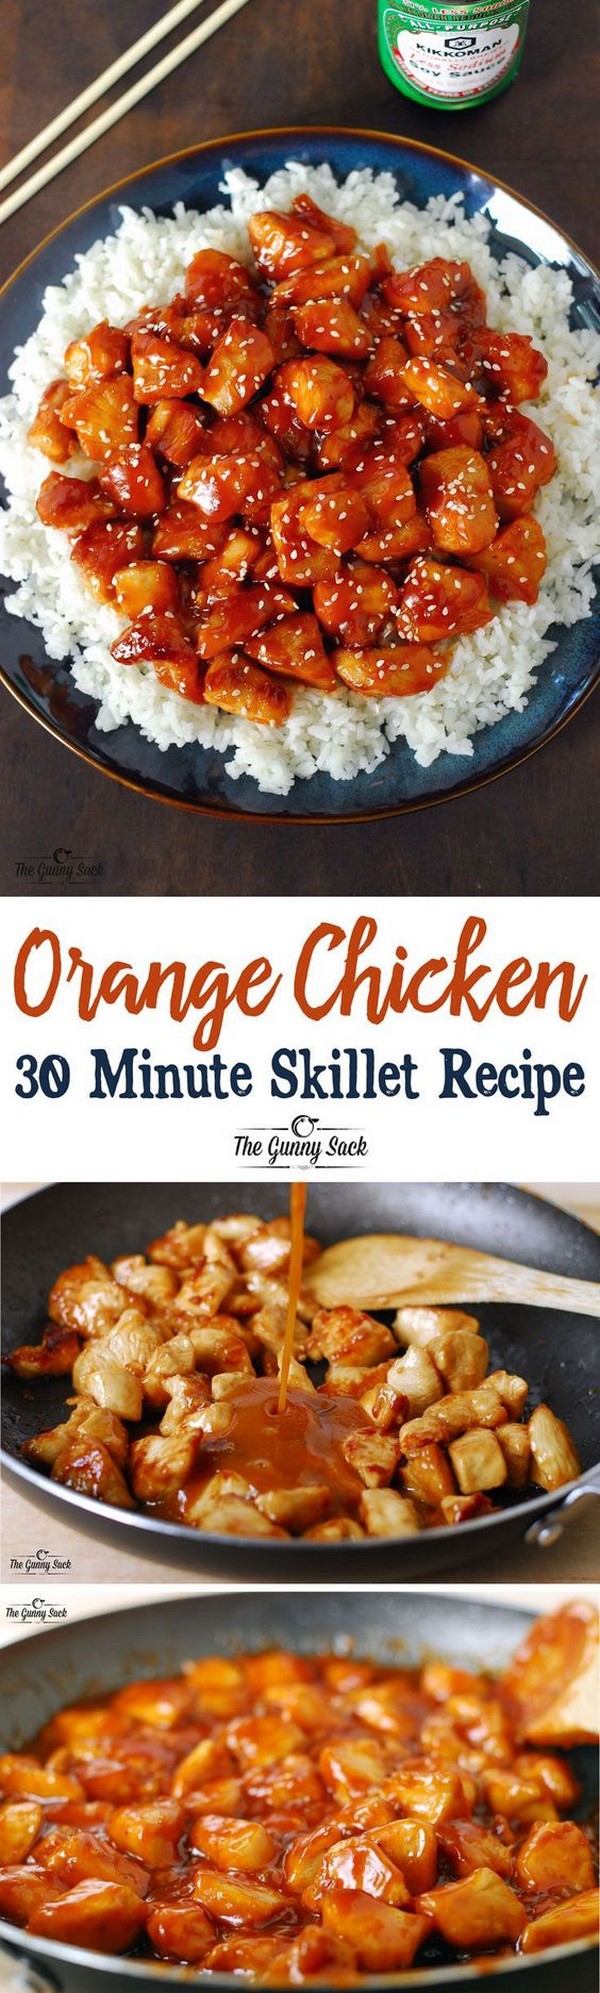 Orange Chicken 30 Minute Skillet Recipe